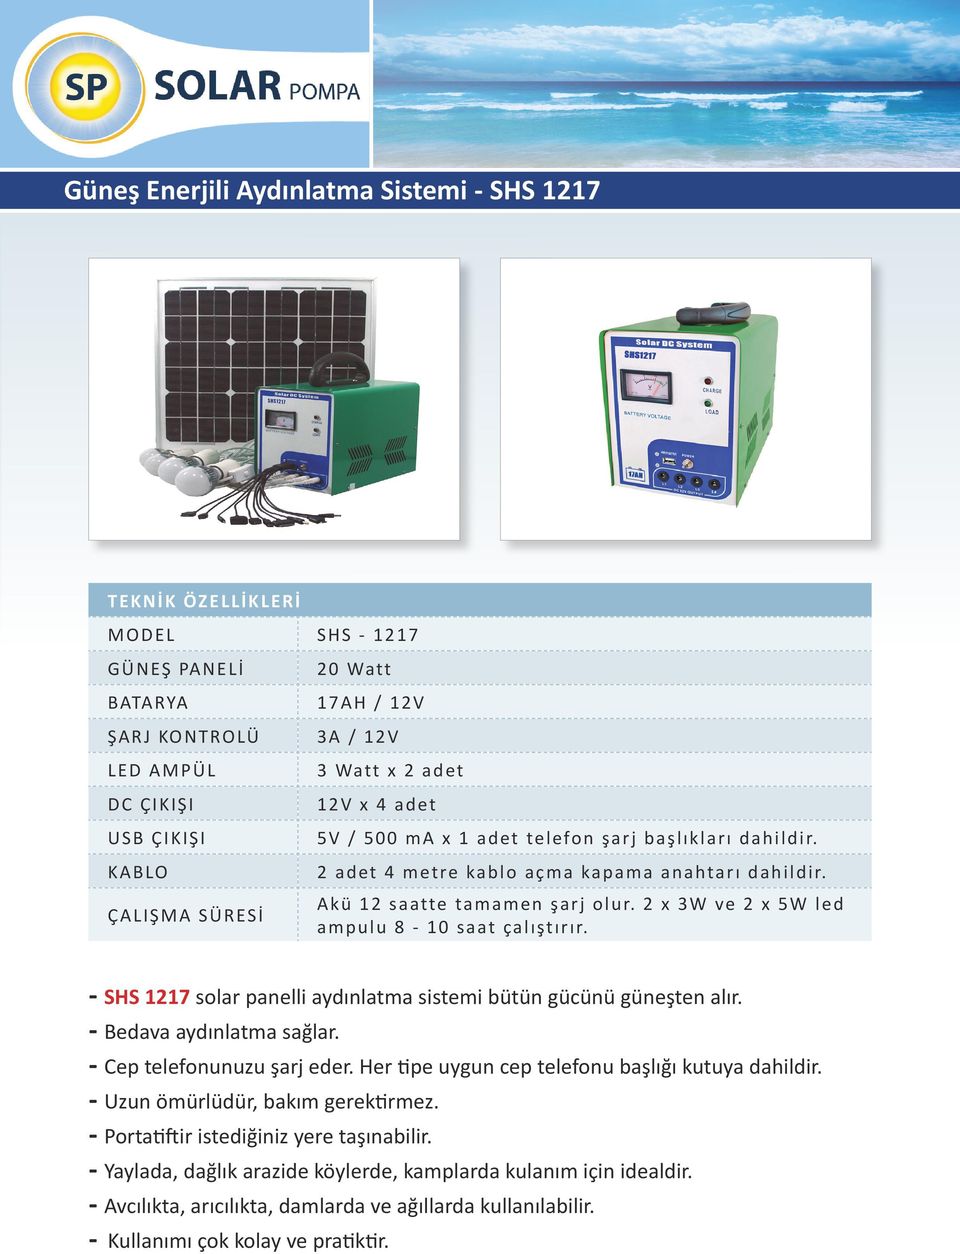 2 x 3W ve 2 x 5W led ampulu 8-10 saat çalıştırır. - SHS 1217 solar panelli aydınlatma sistemi bütün gücünü güneşten alır. - Bedava aydınlatma sağlar.